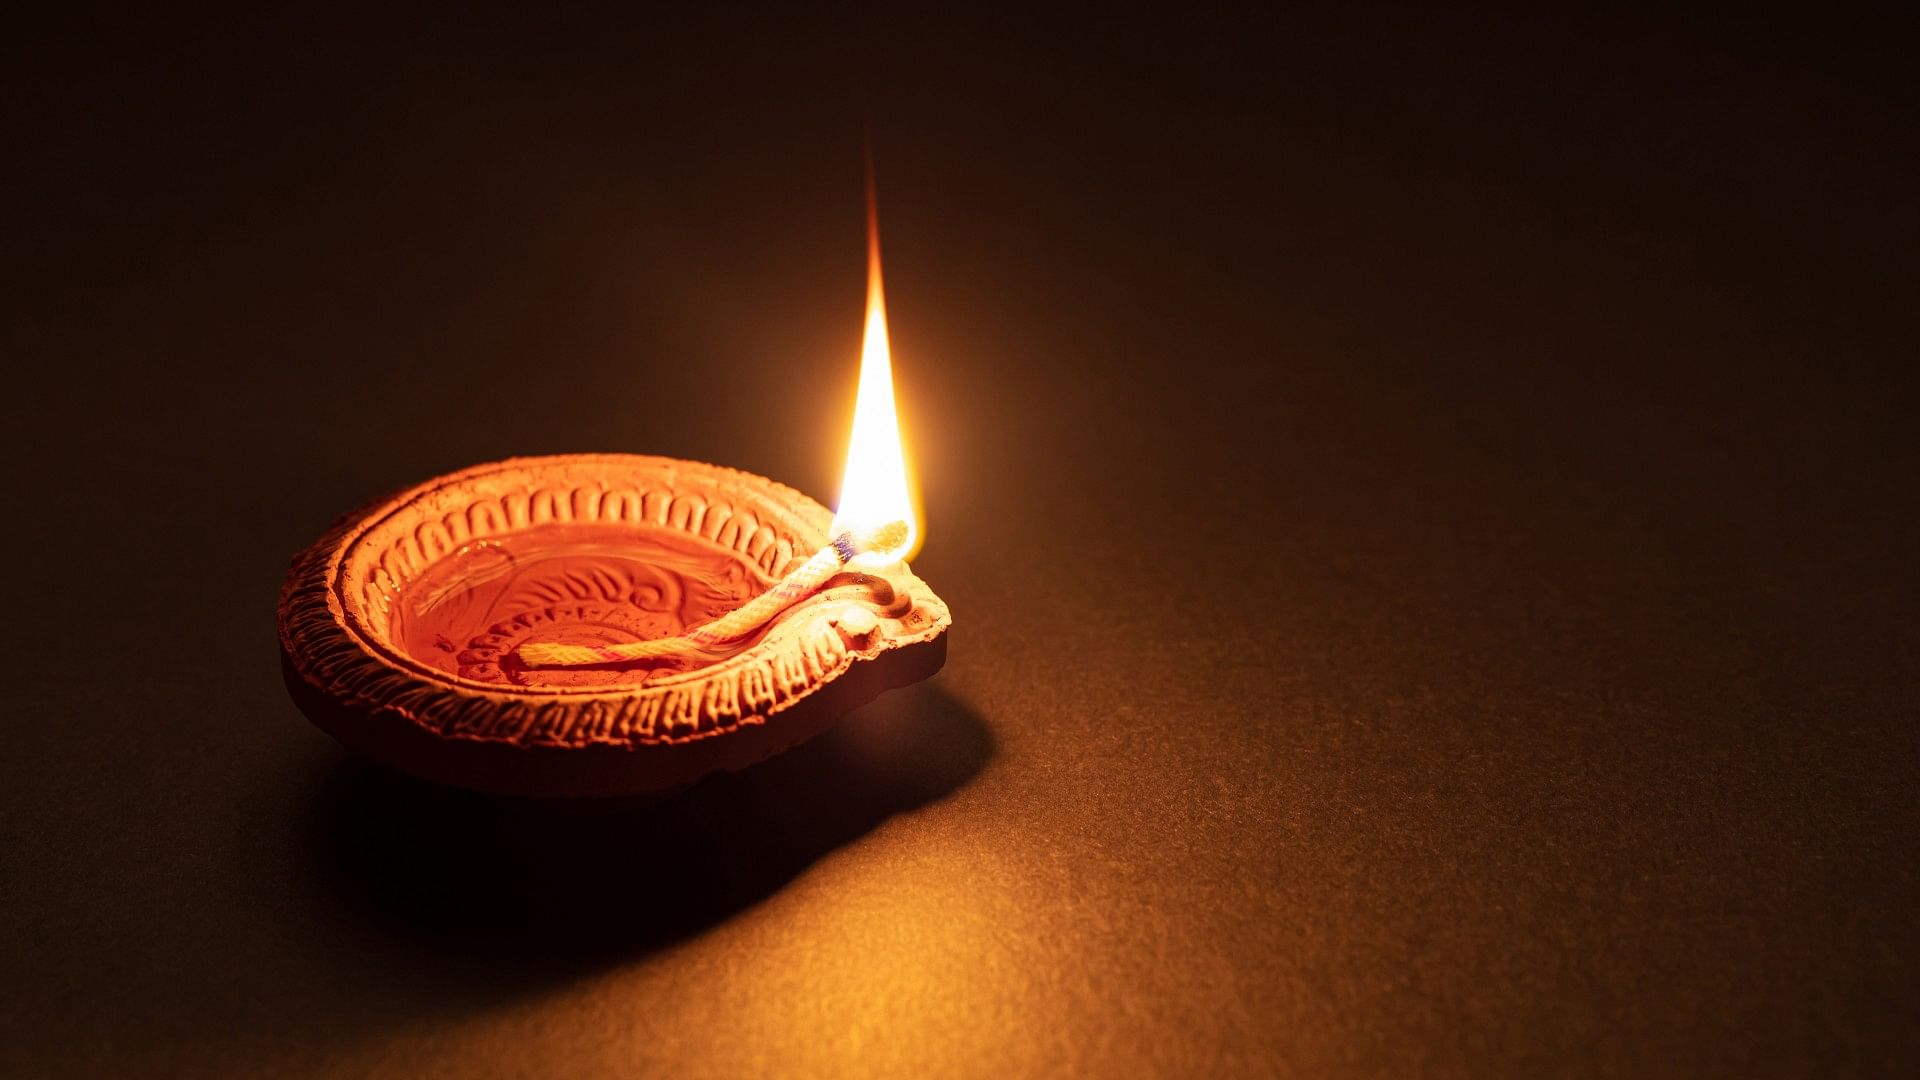 Vastu Tips For Temple: Diya Jalane ka Sahi Tarika Know The Right Way To Light A Diya